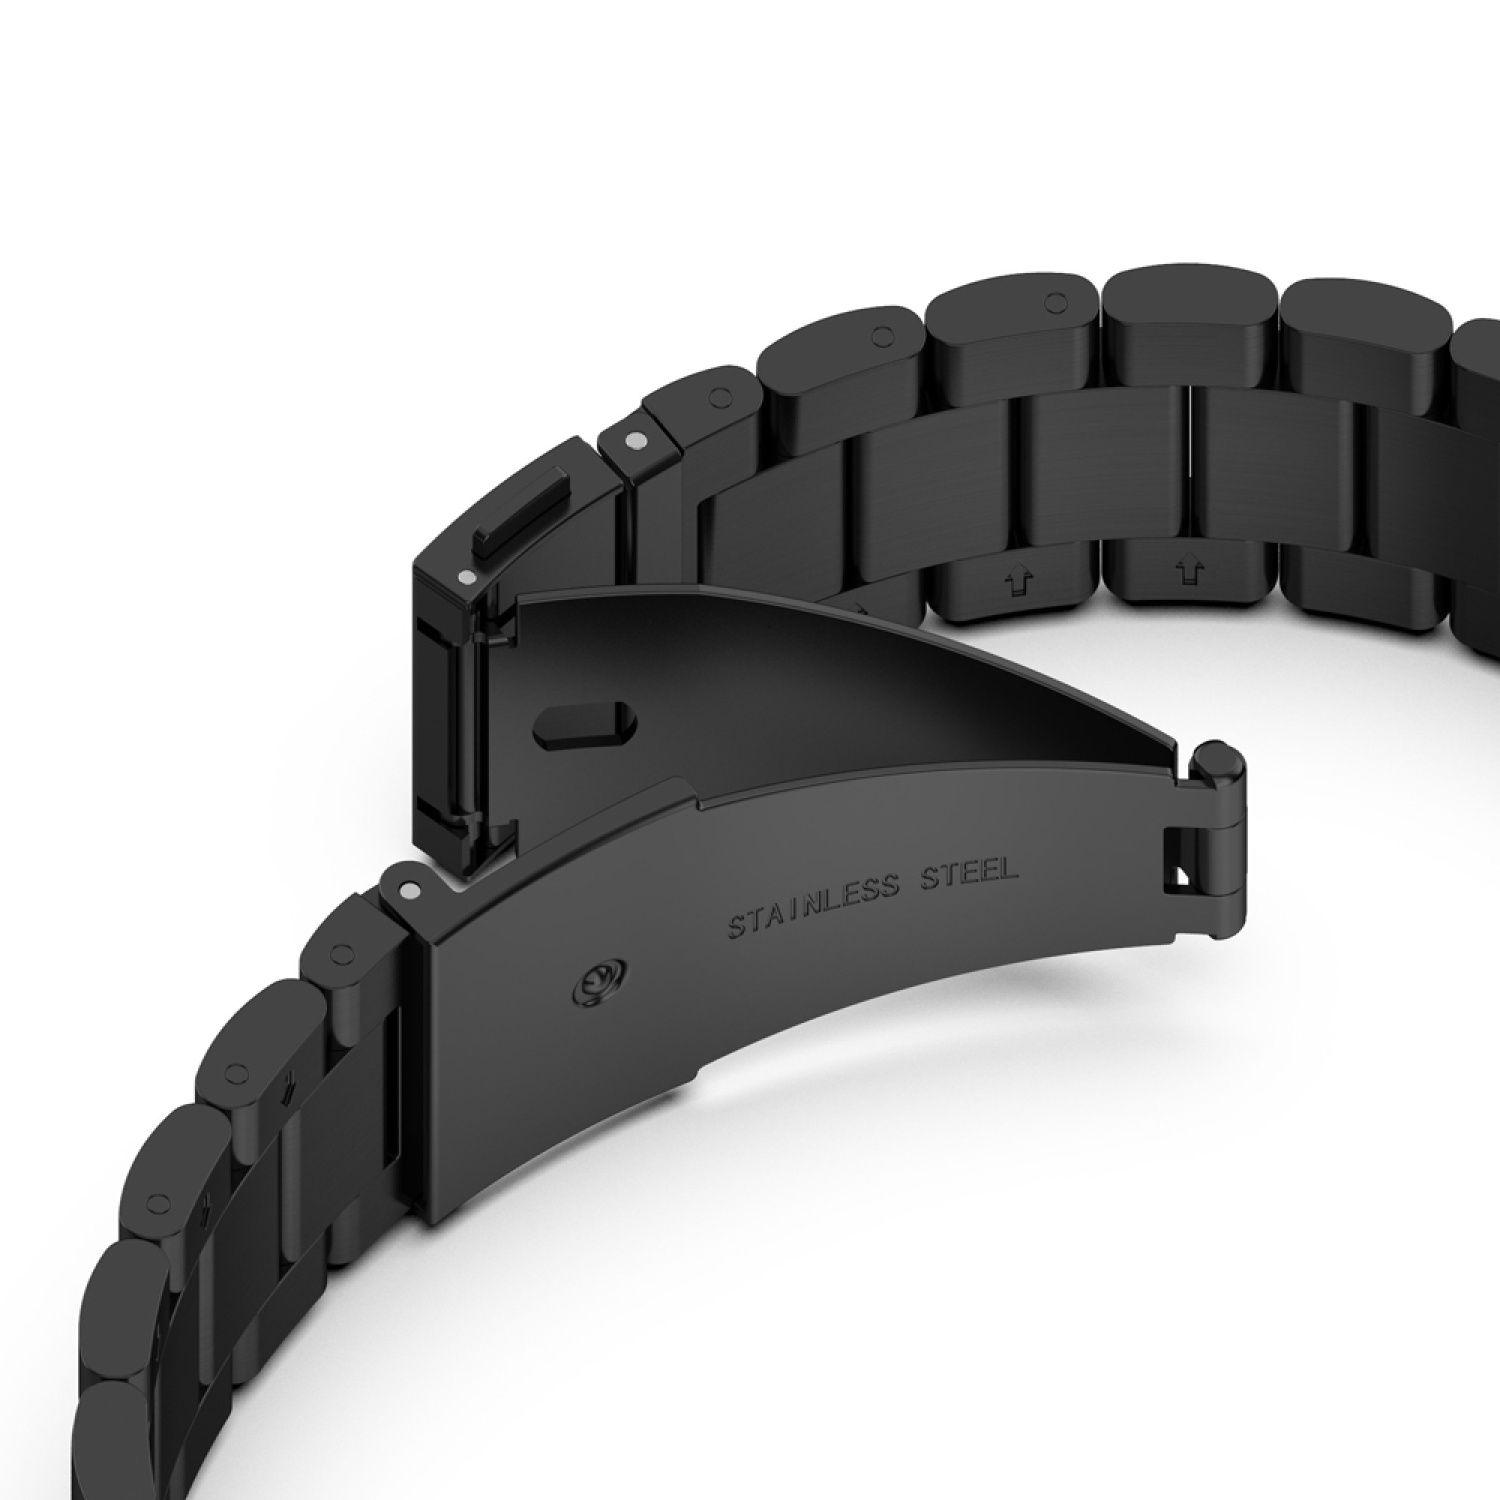 Ersatzband, Huawei, KÖNIG DESIGN 46mm, Schwarz 3 Sportarmband, GT Watch